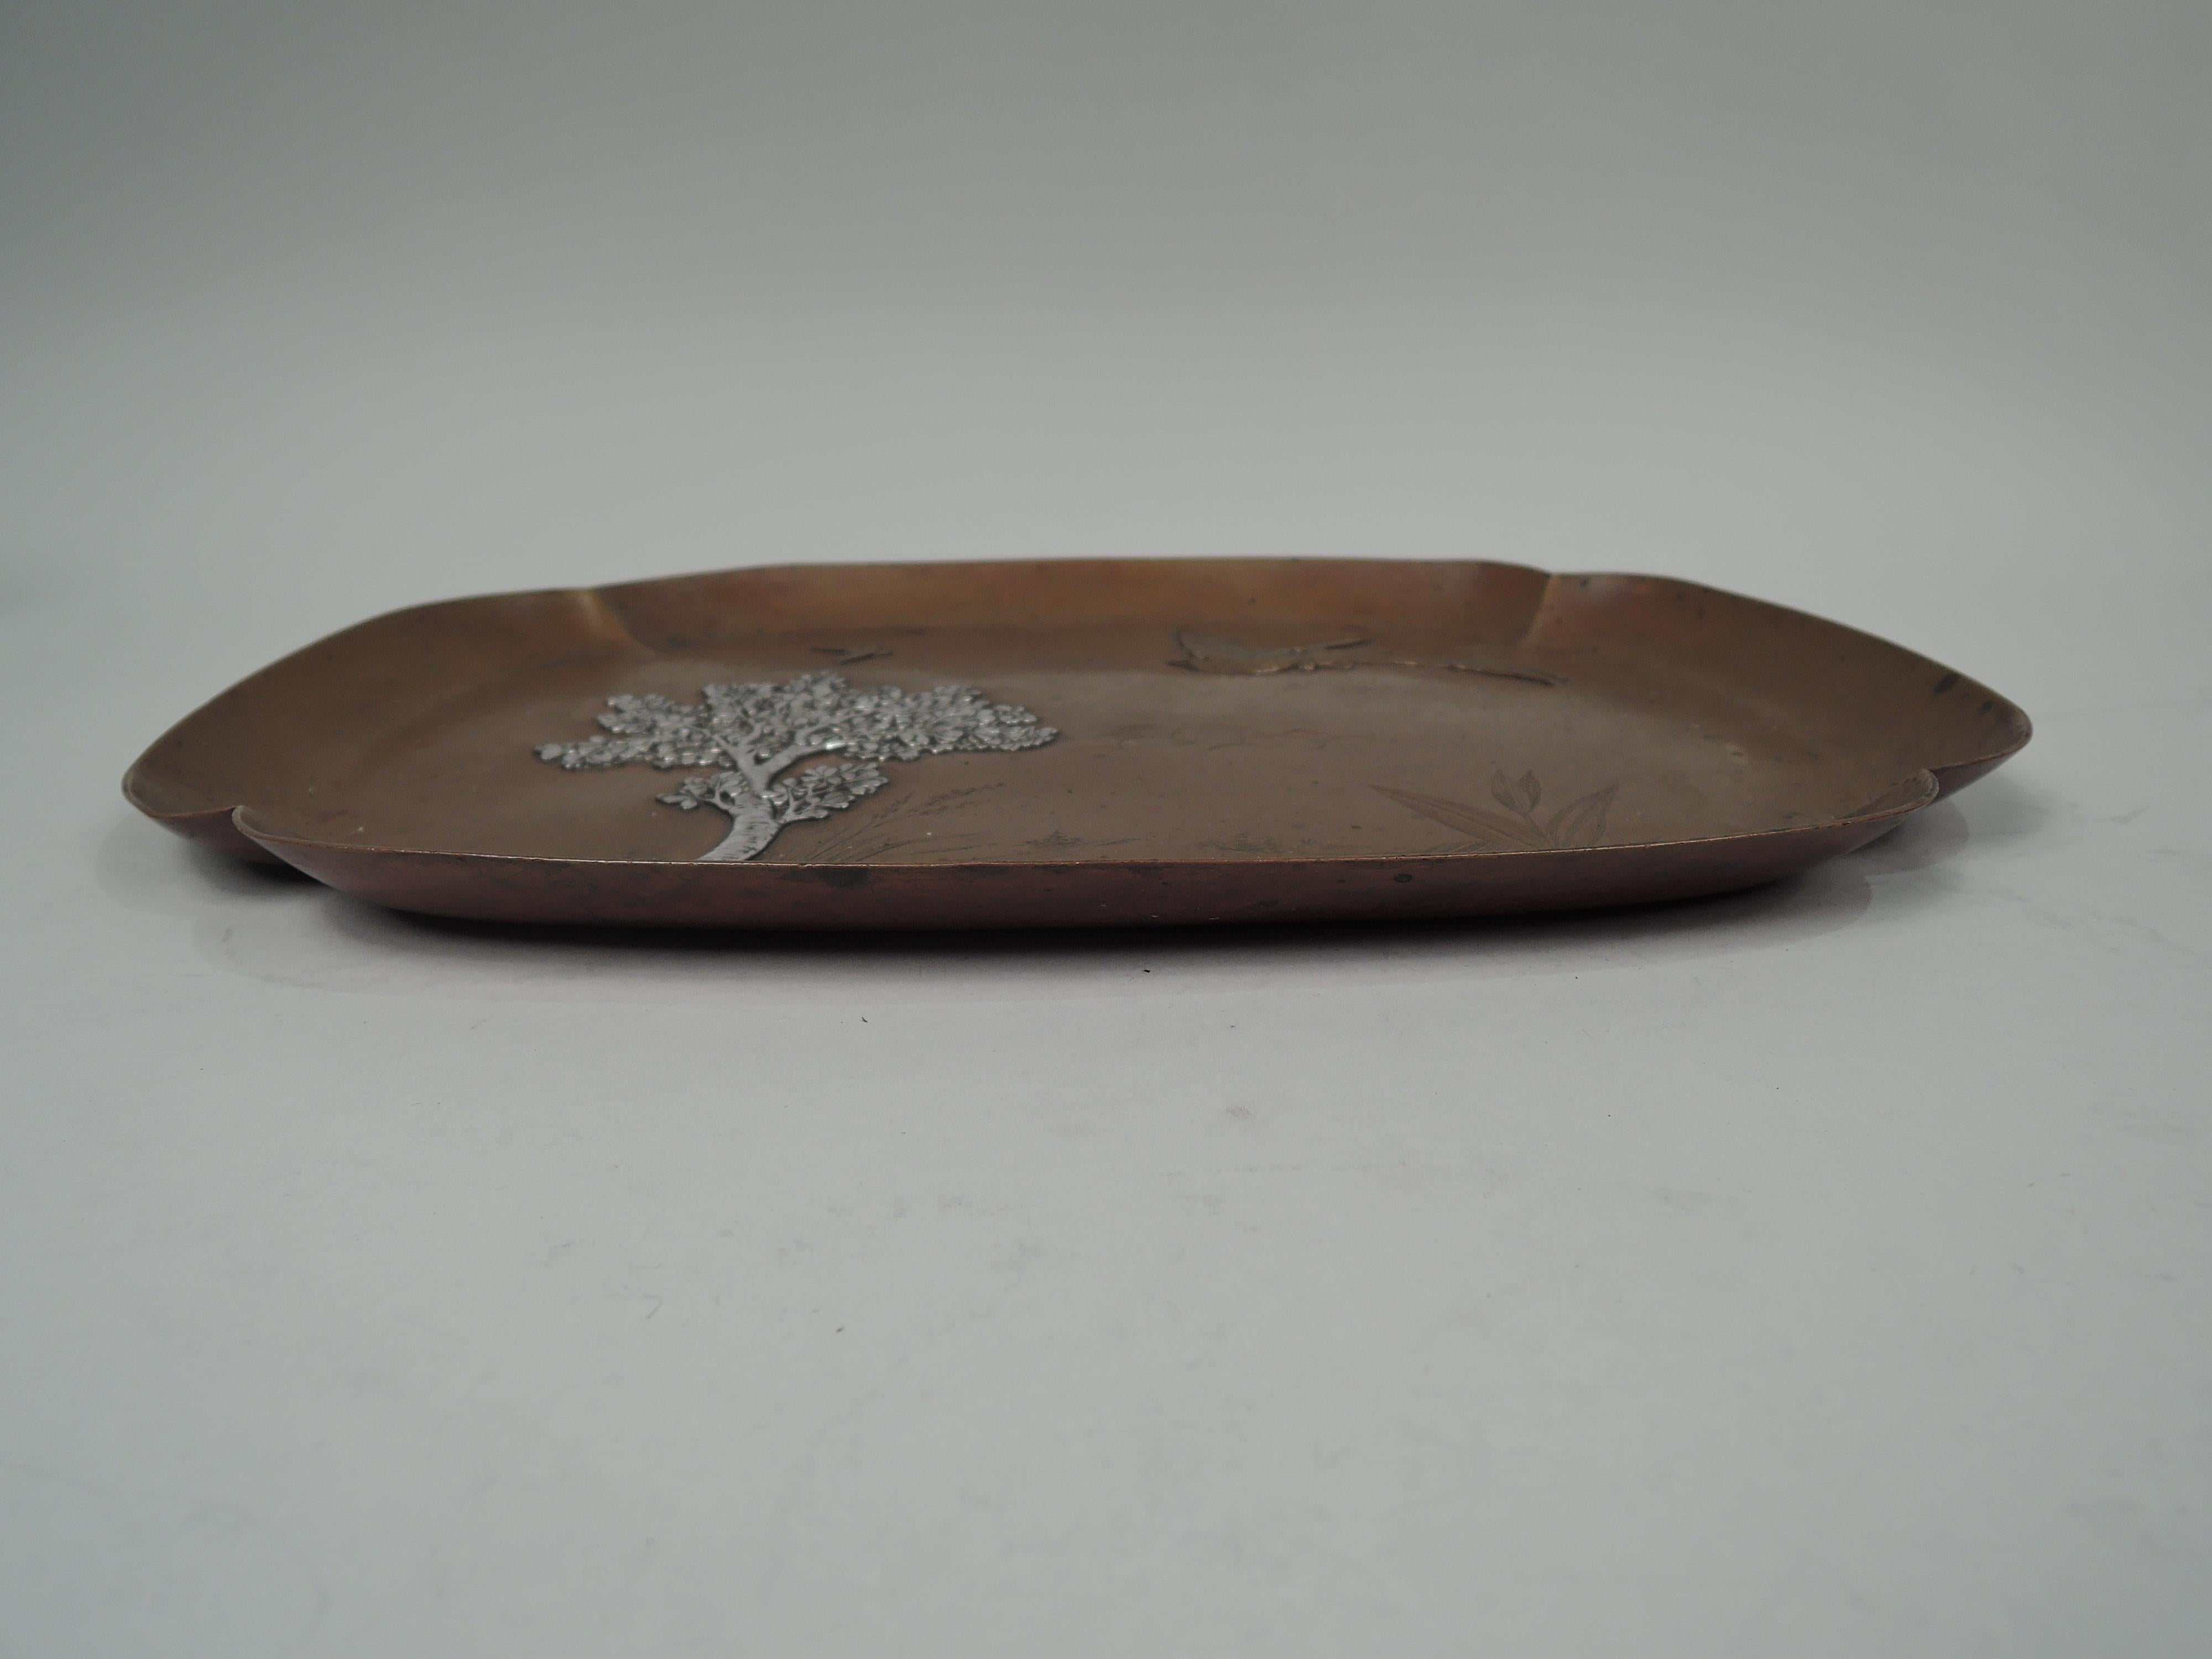 Kupfer-Tablett aus japanischem Mischmetall. Hergestellt von Gorham in Providence im Jahr 1882. Lappenförmig und rechteckig mit gebogenen Seiten. Aufgetragenes Kupfer- und Silberornament: Baum mit blühenden Ästen und gewundenem, unregelmäßigem Stamm,